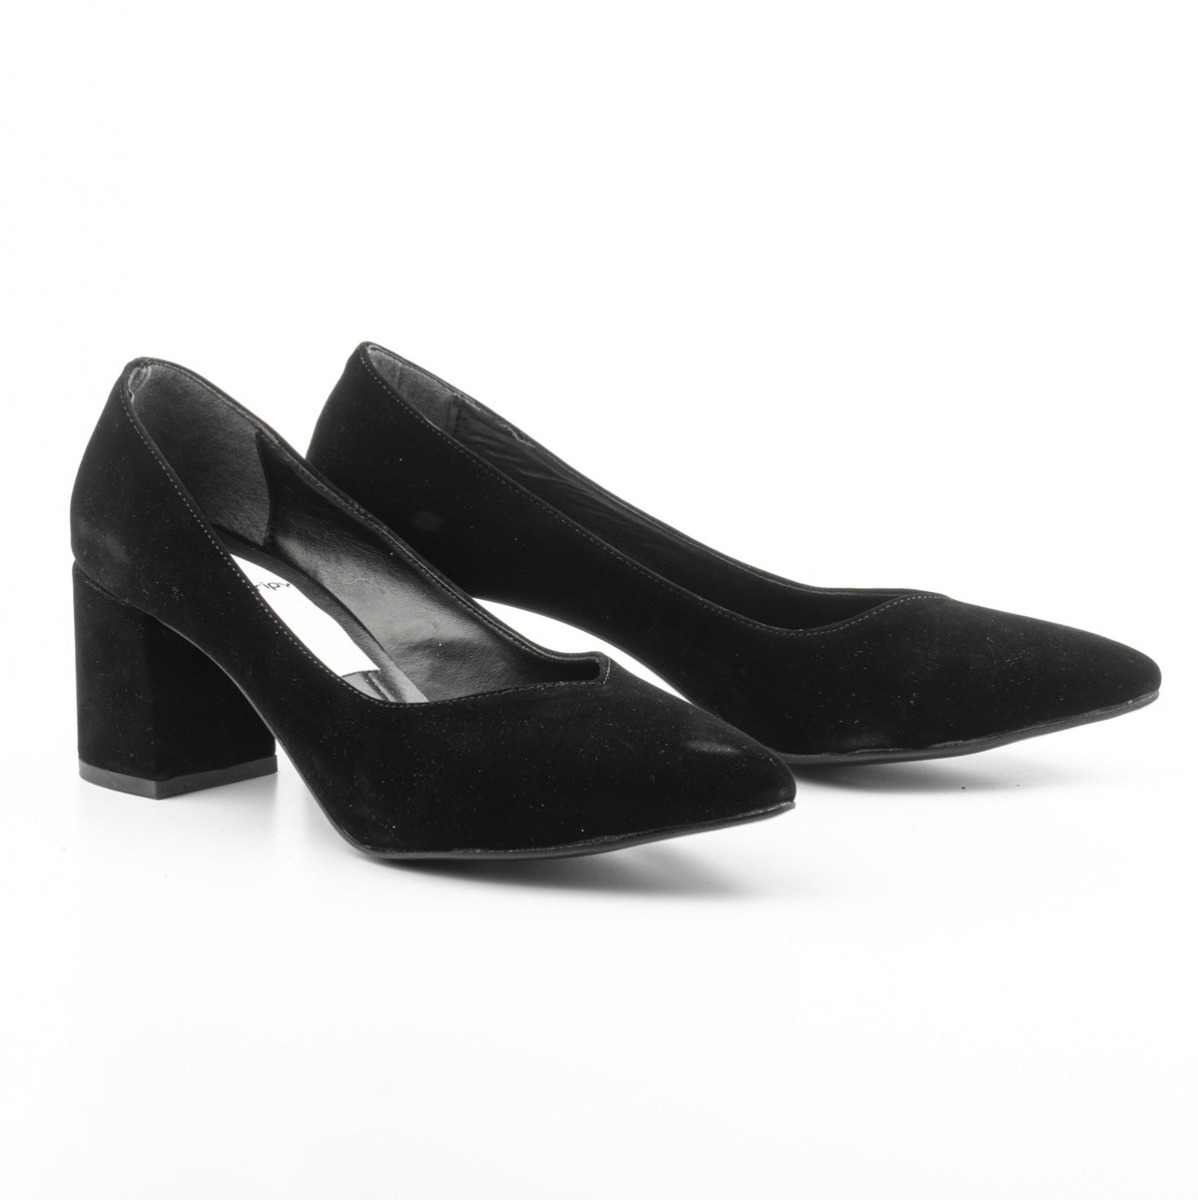 Flo Kadın Klasik Topuklu Ayakkabı. 3